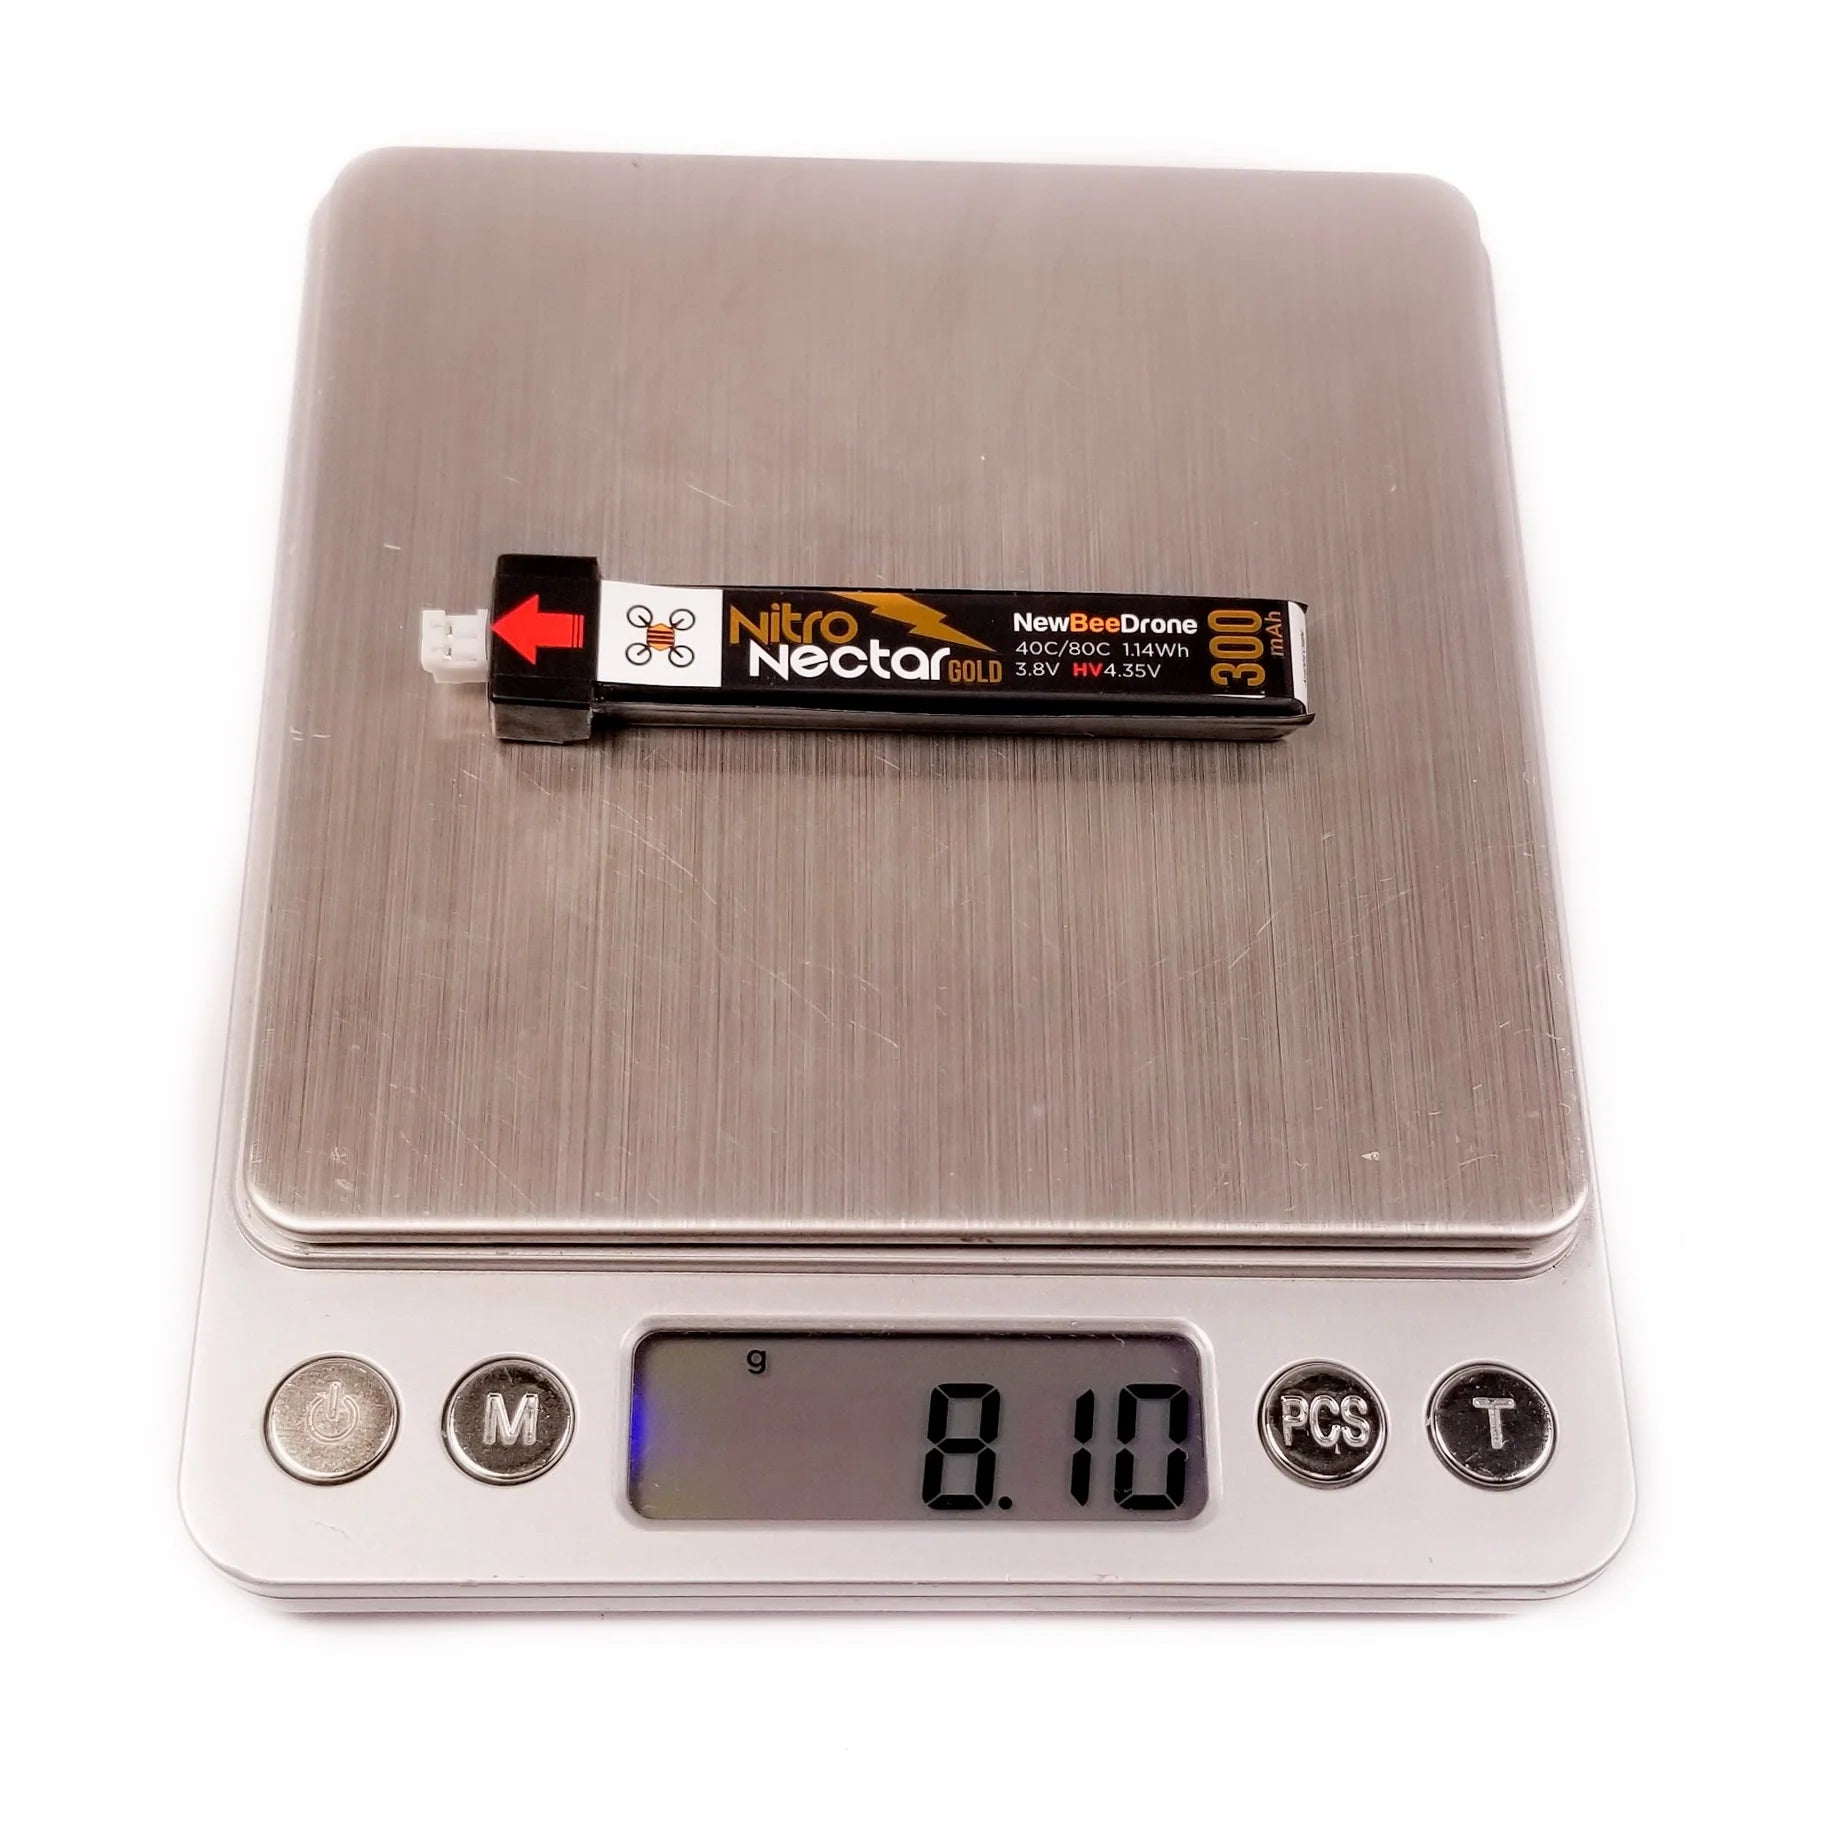 NewBeeDrone Nitro Nectar Gold 300mAh 1S HV PH2 LiPo Battery (4 Pack) [DG]